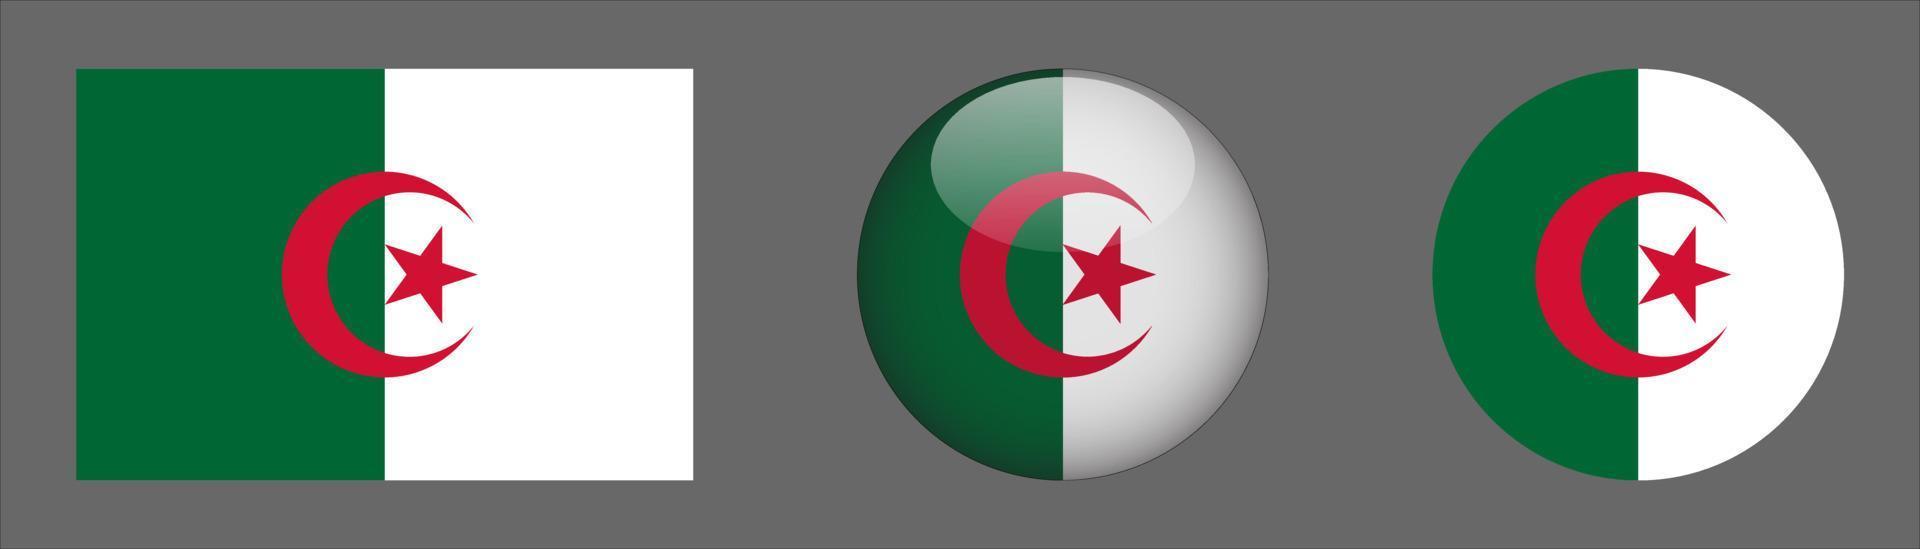 coleção de conjunto de bandeiras da Argélia, original vetor